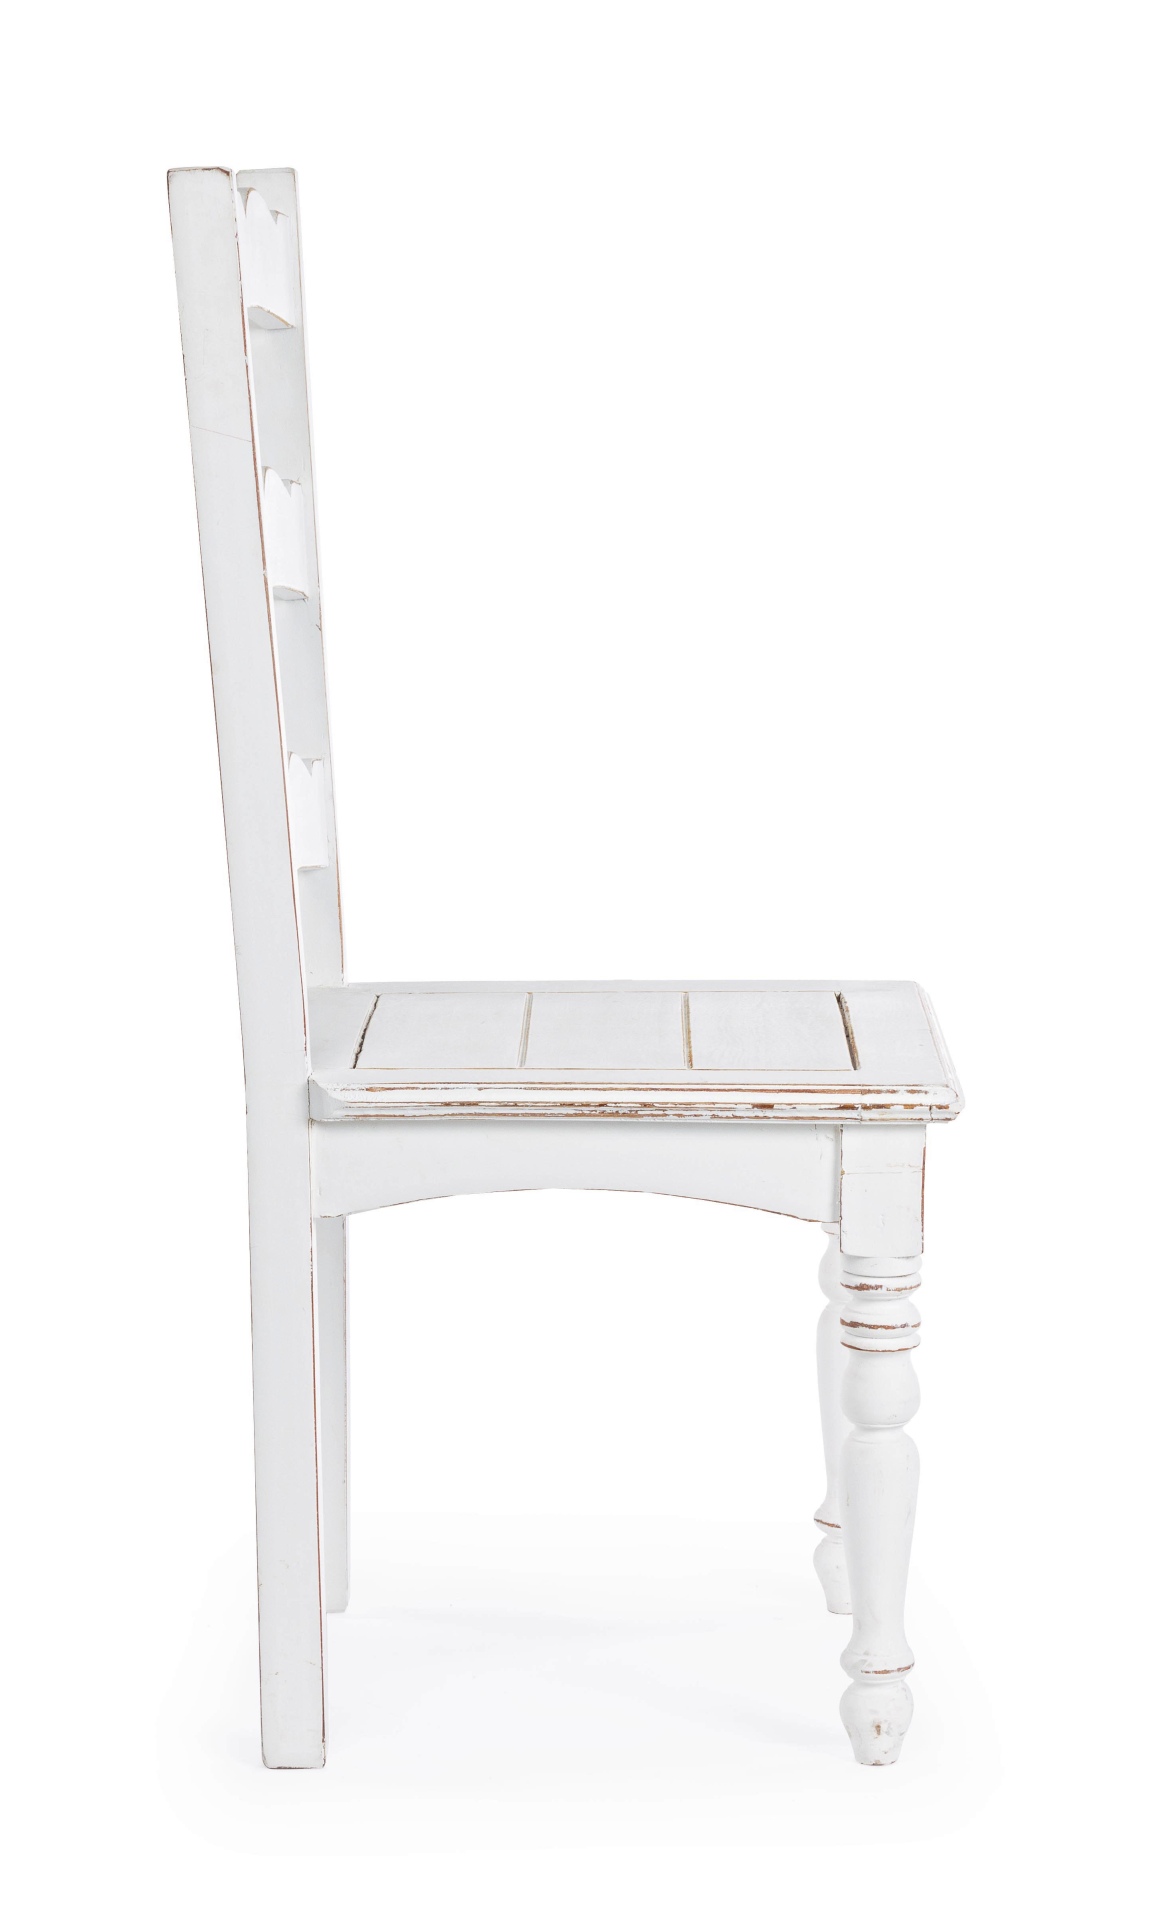 Der Stuhl Colette überzeugt mit seinem klassischen Design. Gefertigt wurde der Stuhl aus Mangoholz, welches eine weiße Feinbearbeitung durch Nitrozellulose erhalten hat und somit einen weißen Farbton hat.